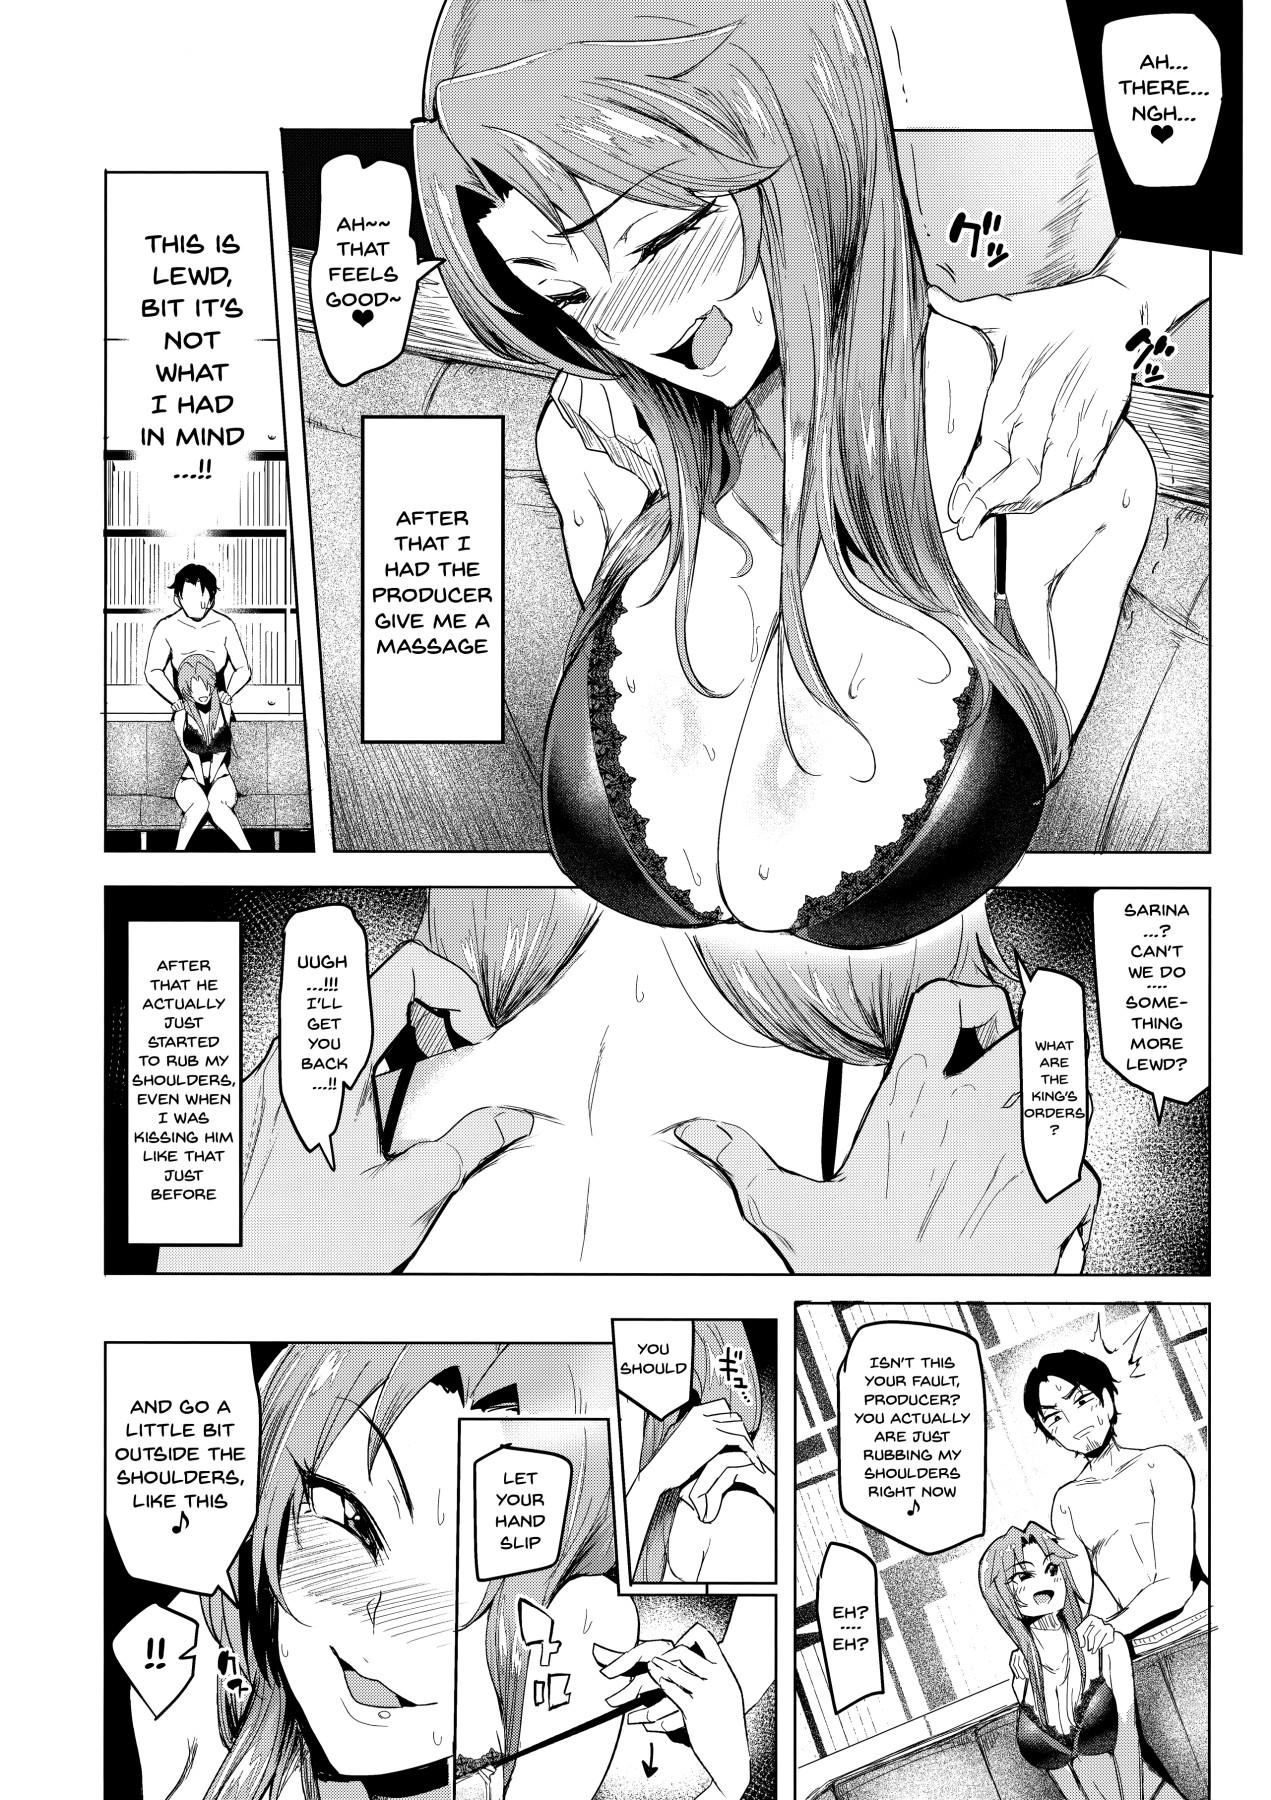 Masturbate vs. Sarina - The idolmaster Beautiful - Page 11